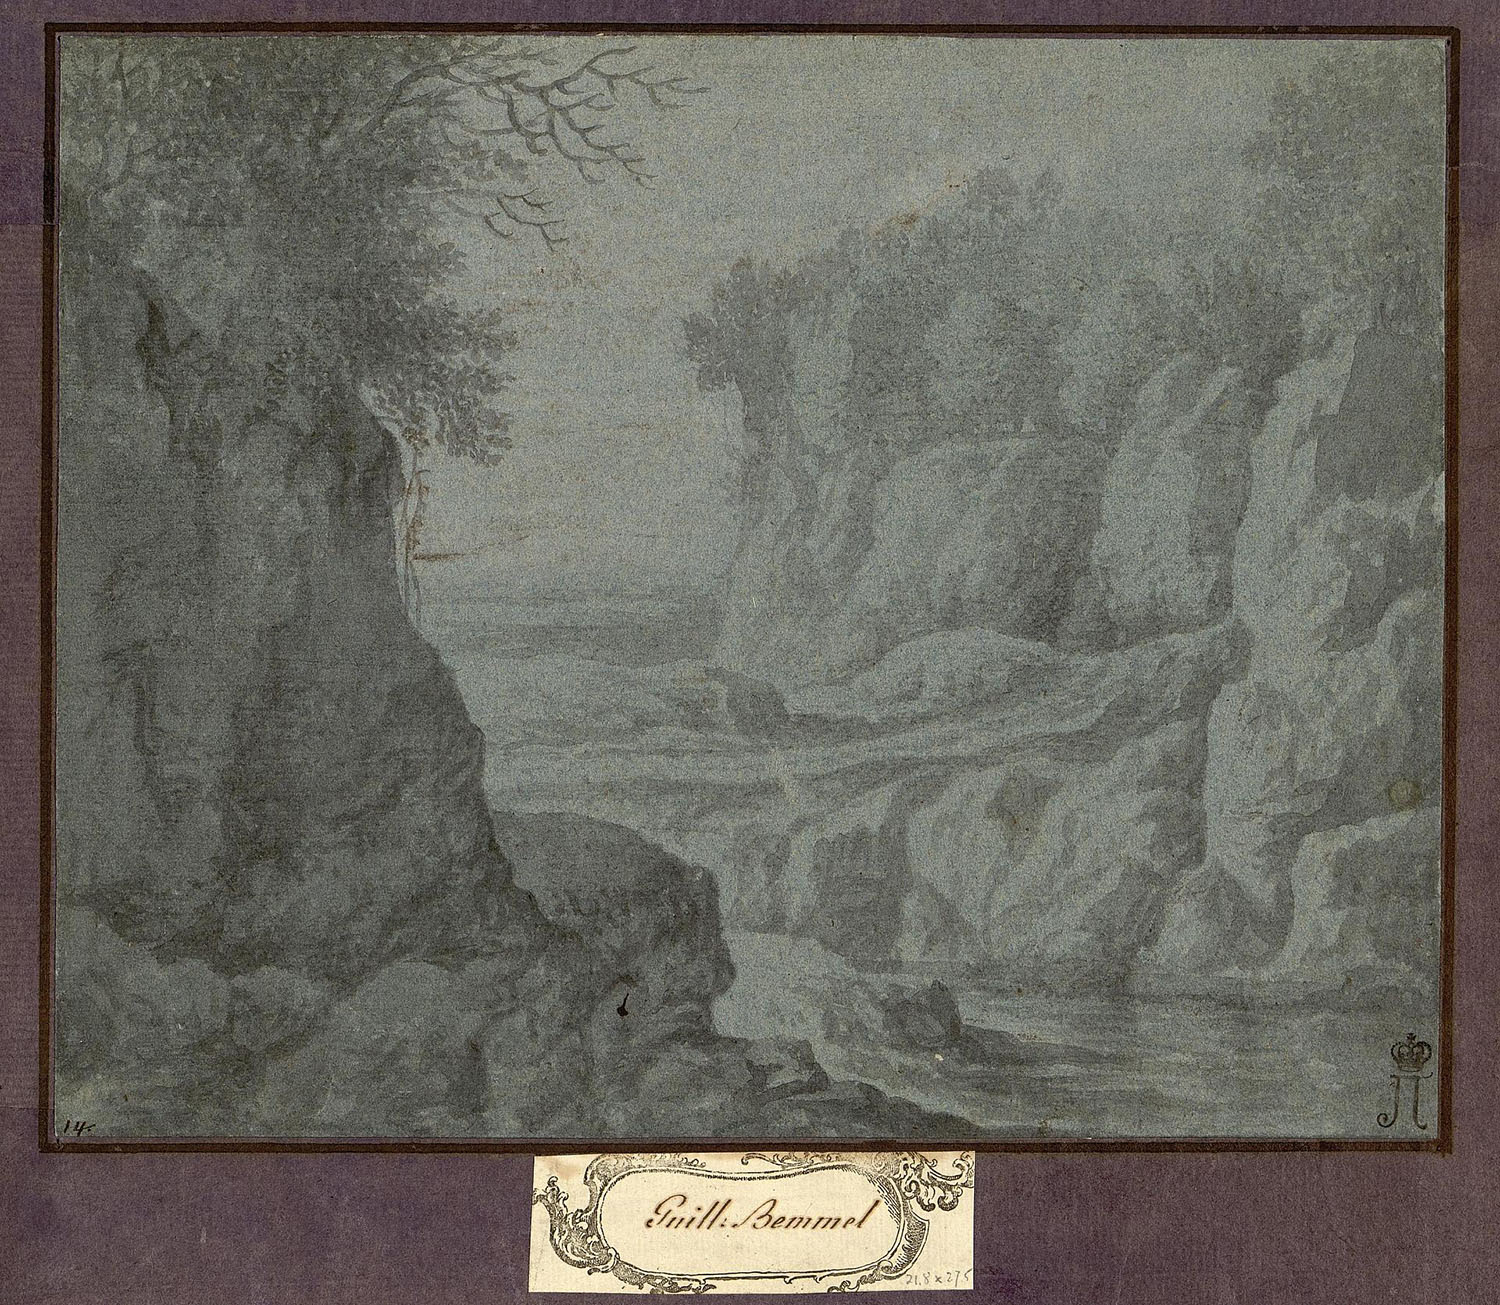 Виллем ван Беммел. "Пейзаж". XVII век. Эрмитаж, Санкт-Петербург.